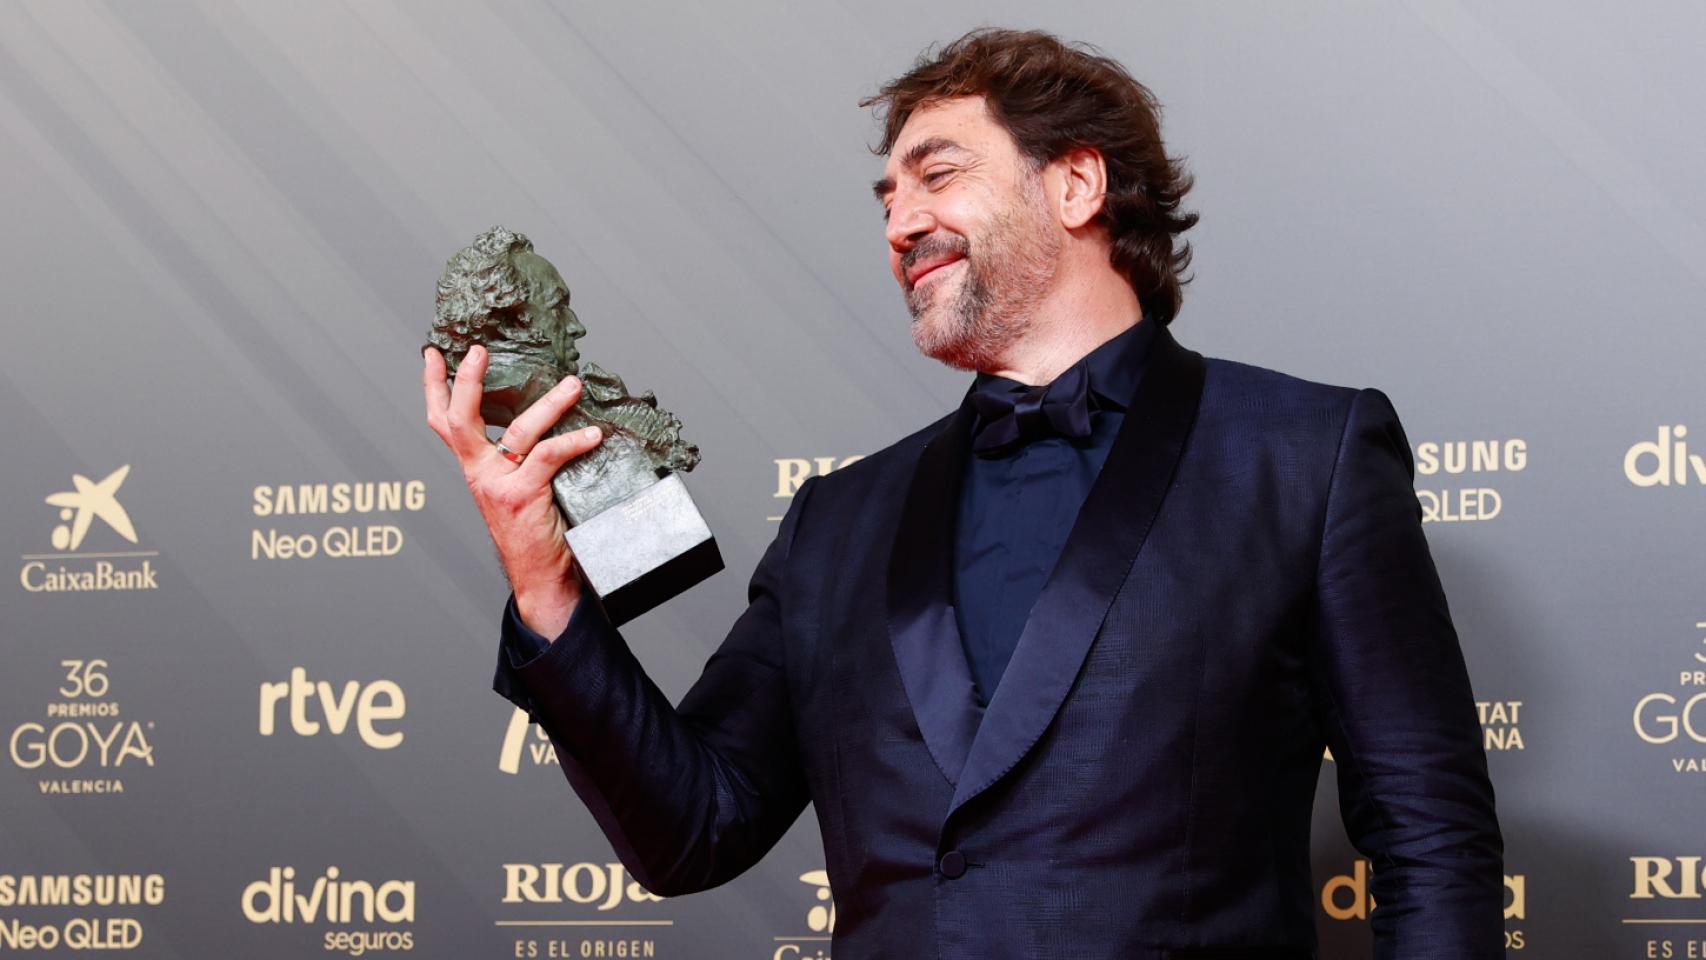 Javier Bardem hace historia en los Goya 2022 con su sexto premio como actor gracias a 'El buen patrón'.